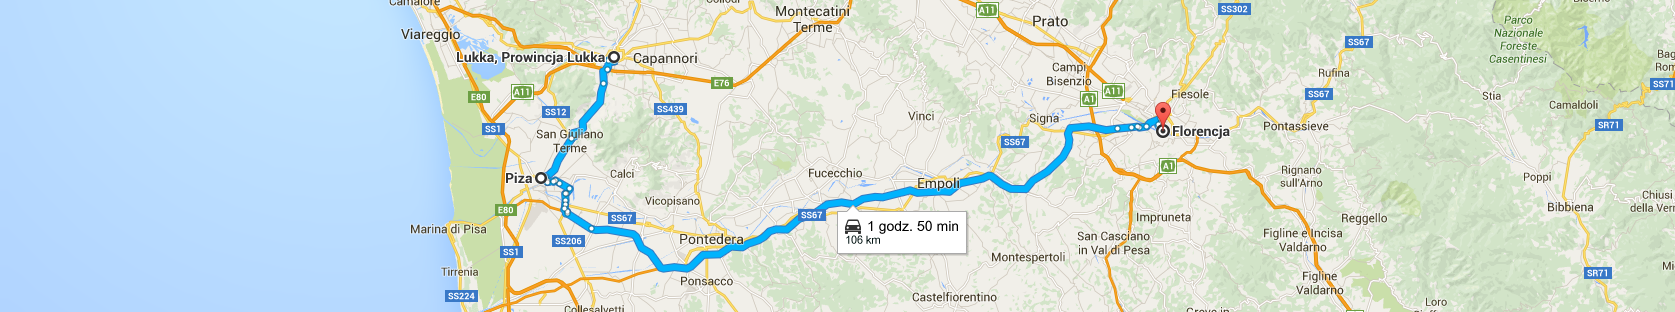 Trasa z Lukki do Florencji